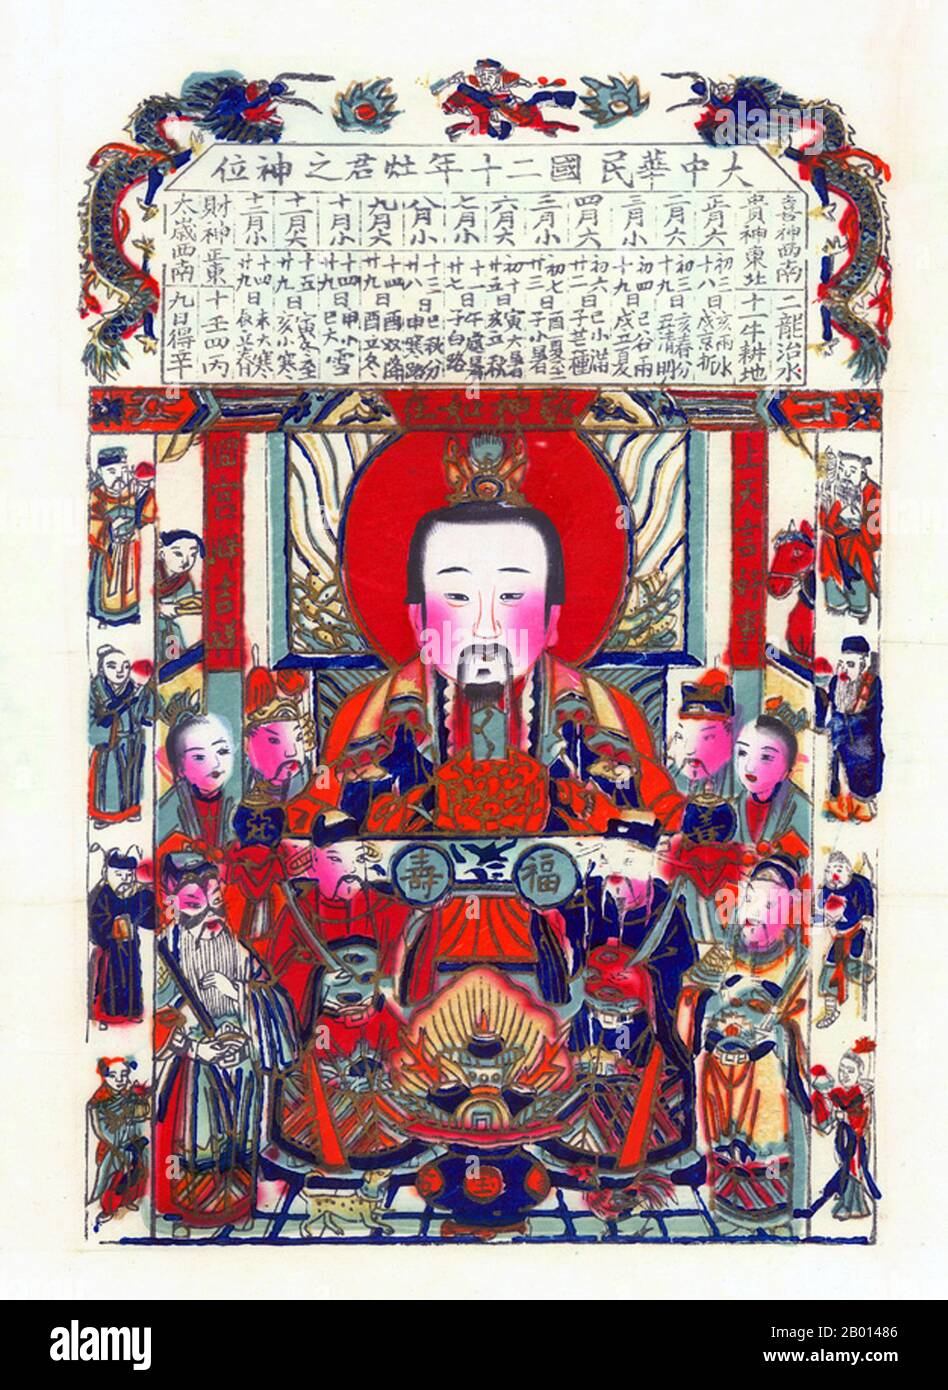 China: Der Küchengott Zao Jun ('Stove Master'), auch Zao Shen genannt ('Stove god' oder 'Stove Spirit'). Holzstich, c.. 1930-1939. In der chinesischen Volksreligion und Mythologie ist der Küchengott Zao Jun der wichtigste einer Fülle von chinesischen Hausgöttern, die den Herd und die Familie schützen. Es wird angenommen, dass er am 23. Tag des 12. Mondmonats, kurz vor dem chinesischen Neujahr, in den Himmel zurückkehrt, um dem Jade-Kaiser die Aktivitäten jedes Haushalts im vergangenen Jahr zu berichten. Der Jade-Kaiser, Meister des Himmels, belohnt oder bestraft eine Familie auf der Grundlage dieses Berichts. Stockfoto